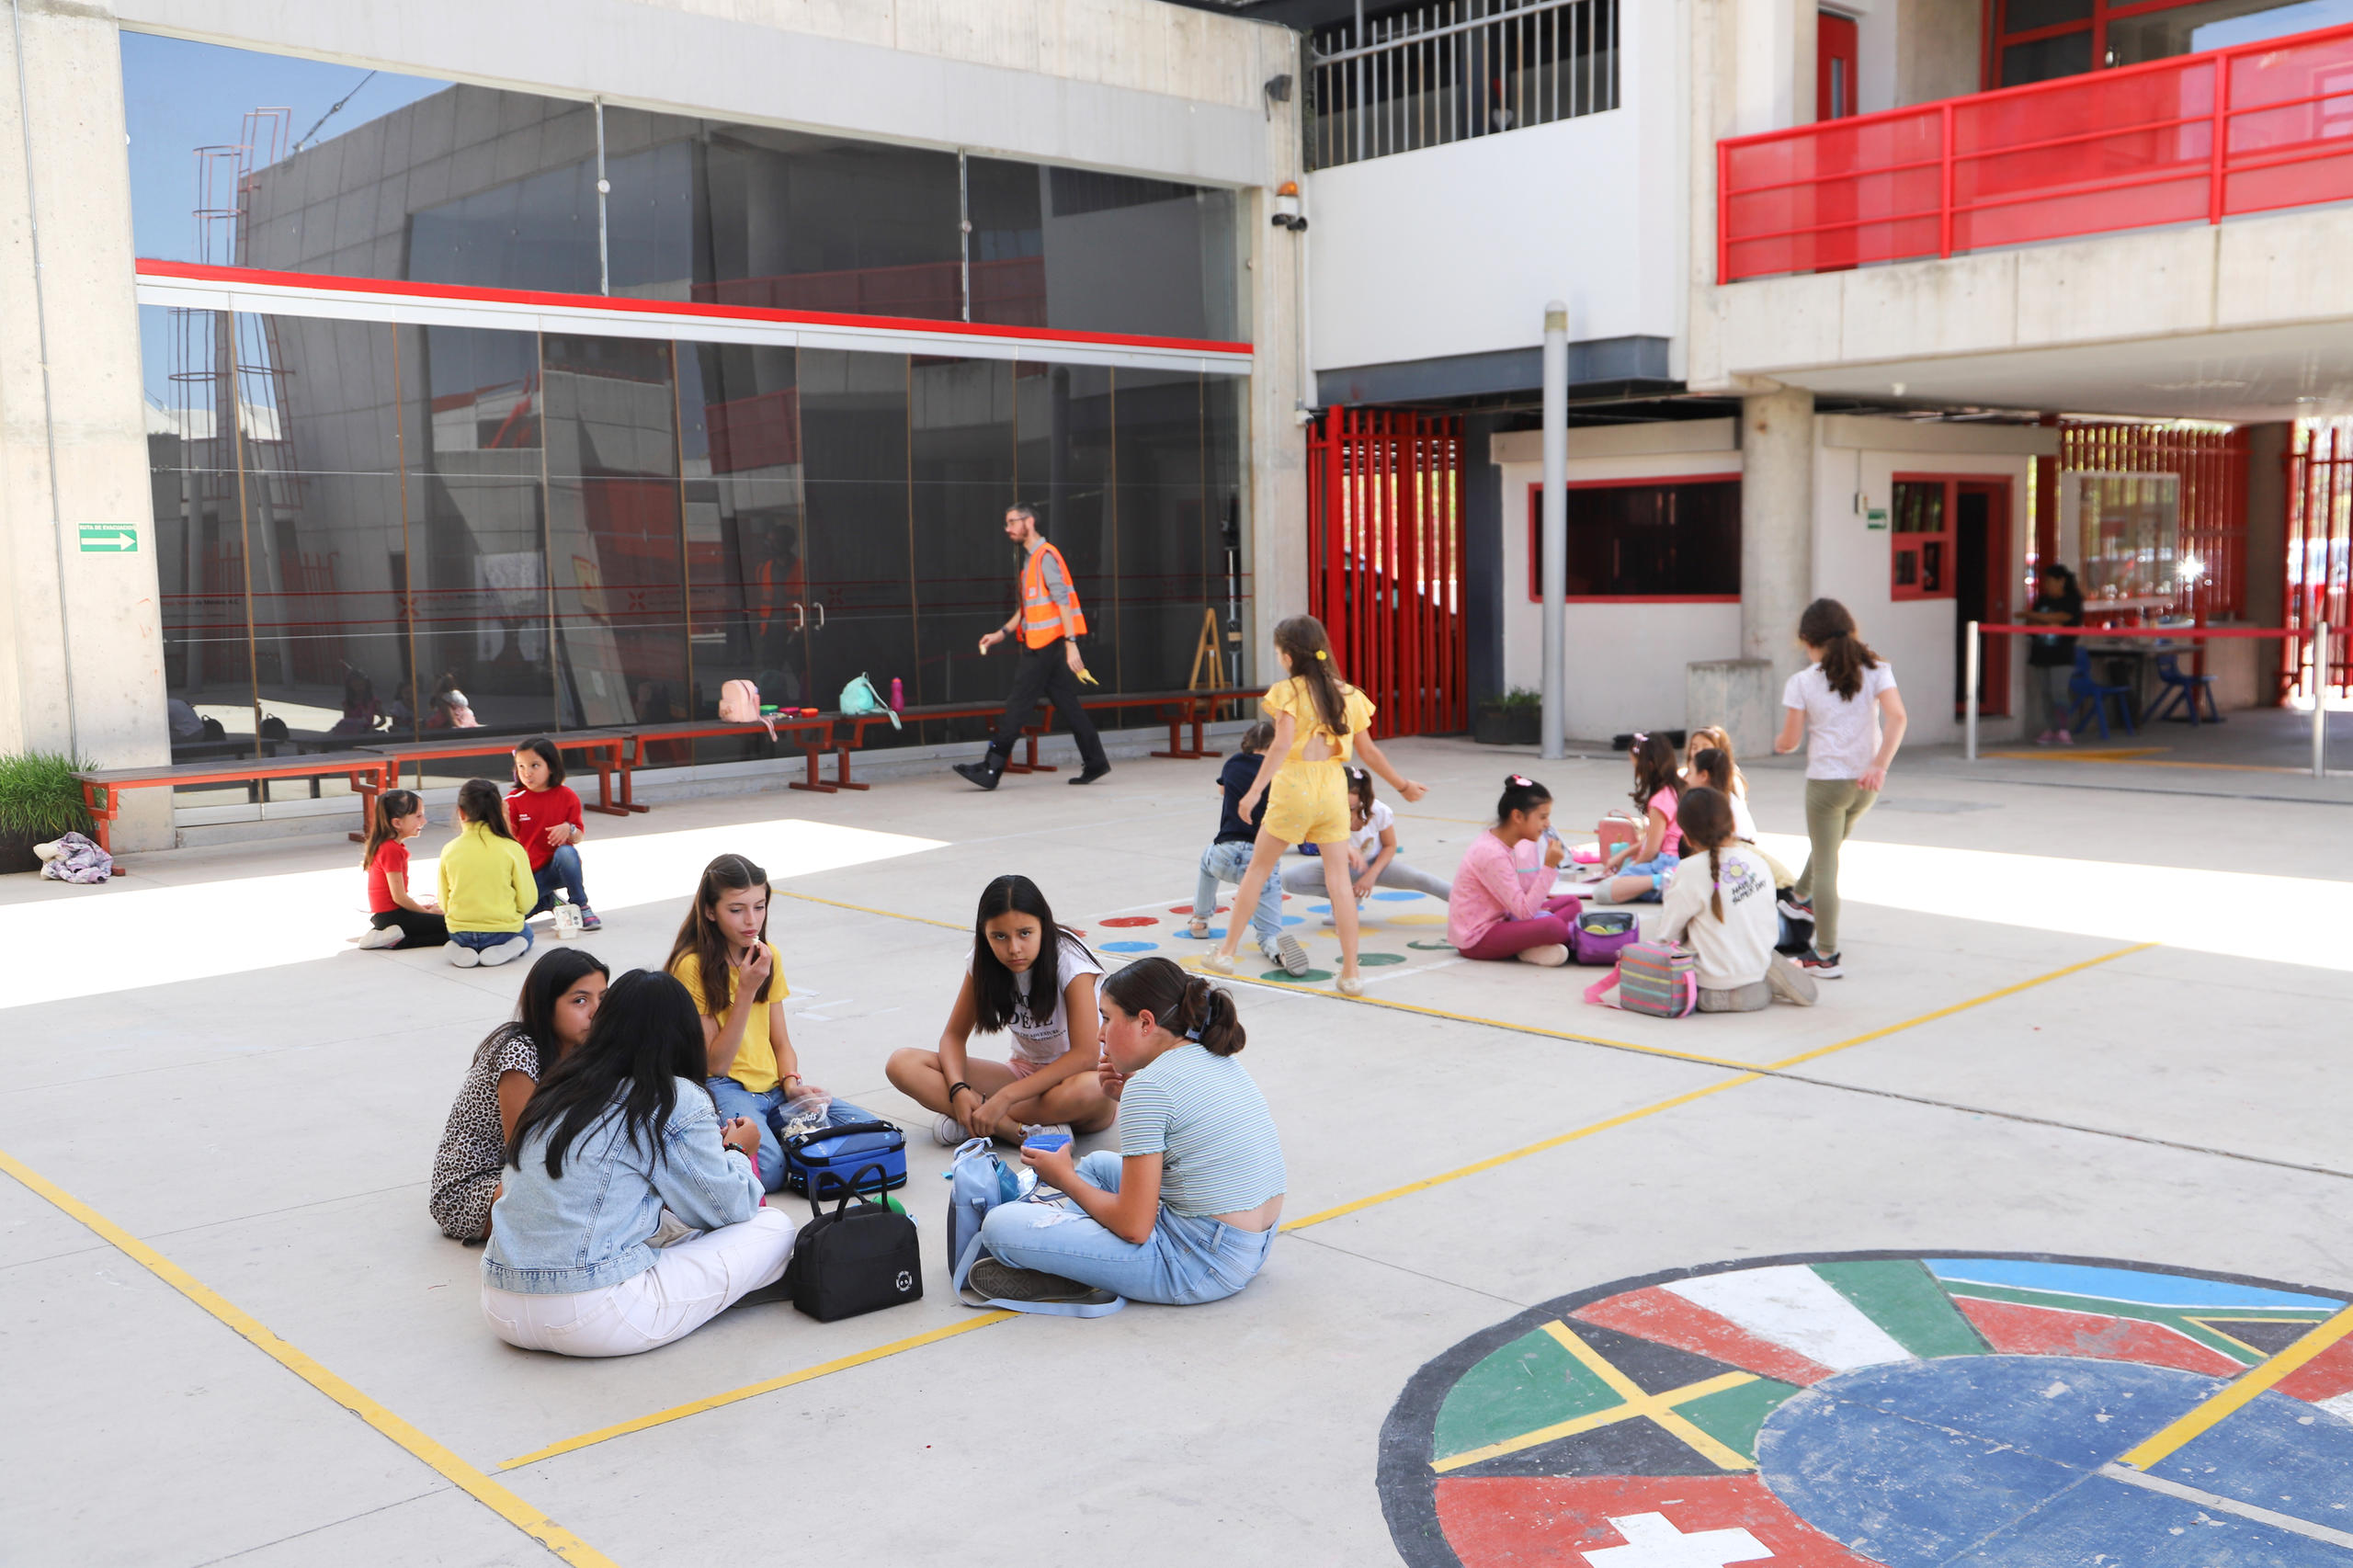 Enfants jouant dans une école suisse au Mexique.